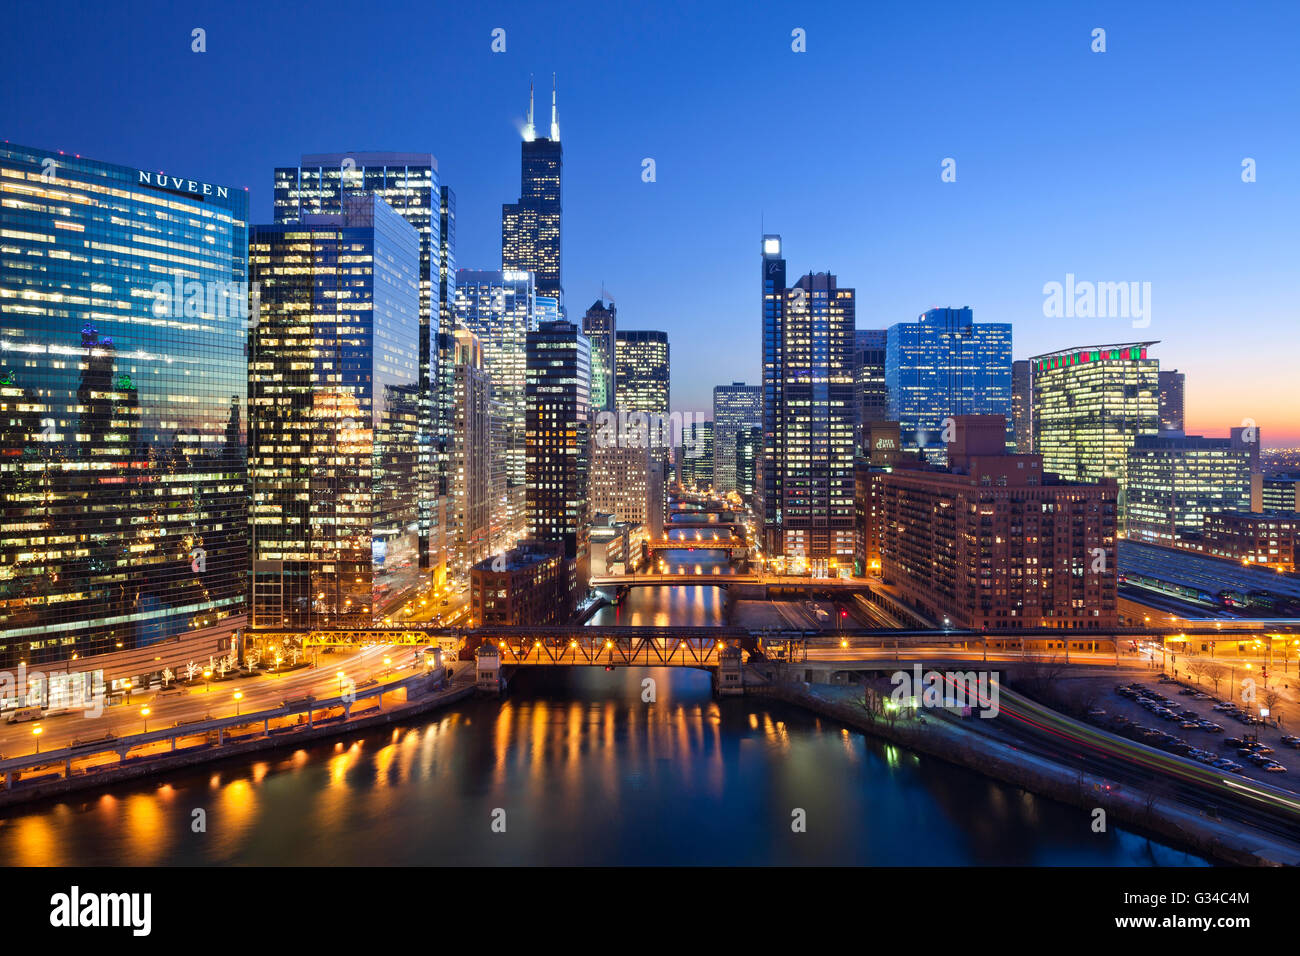 Stadt von Chicago. Bild von Chicago Downtown, Chicago River mit Brücken während des Sonnenuntergangs. Stockfoto